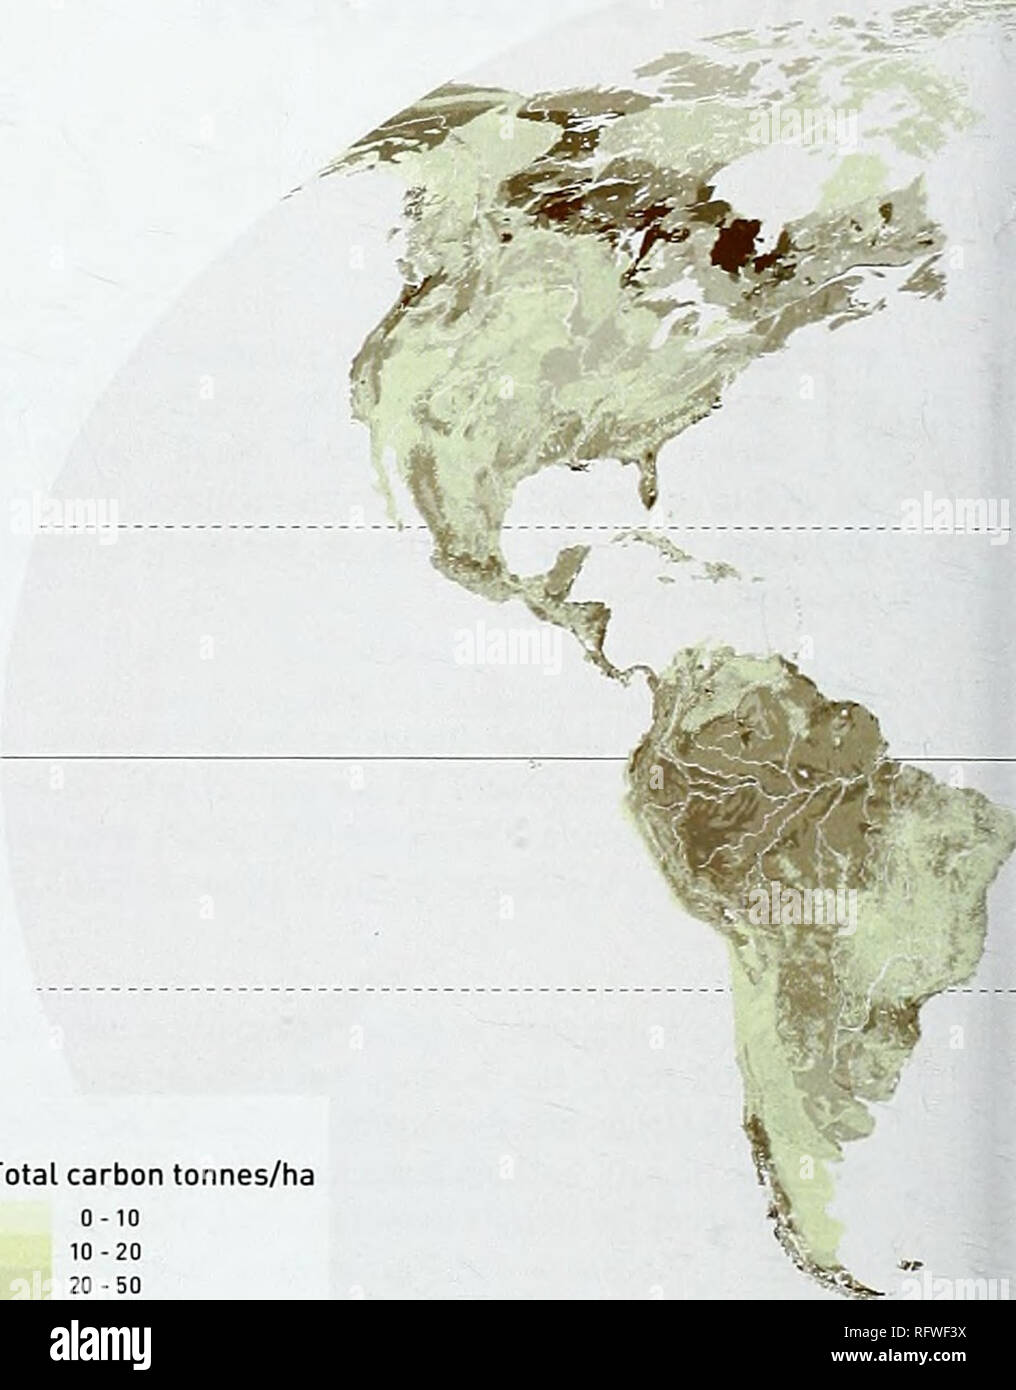 . Kohlenstoff- und Artenvielfalt. Eine Demonstration von Atlas. Kohlenstoff- und Artenvielfalt Die globalen CO2-Speichern und Biodiversität: global Datasets Speicherung von Kohlenstoff in terrestrischen Ökosystemen terrestrische Ökosysteme der Erde sind schätzungsweise über 2.000 Gt CO IGtC] in ihren oben zu speichern - und unterirdischen Biomasse und im Boden (Campbell ef an. 2008 a). Einem erheblichen Anteil von Kohlenstoff ist in tropischen Ökosystemen entfernt - die Karte von Speicherung von Kohlenstoff in terrestrischen Ökosystemen präsentierte hier durch die Kombination der besten verfügbaren global konsistente Datensätze auf Kohlenstoff in Biomasse iRuesch leben und Gib hergestellt wurde Stockfoto